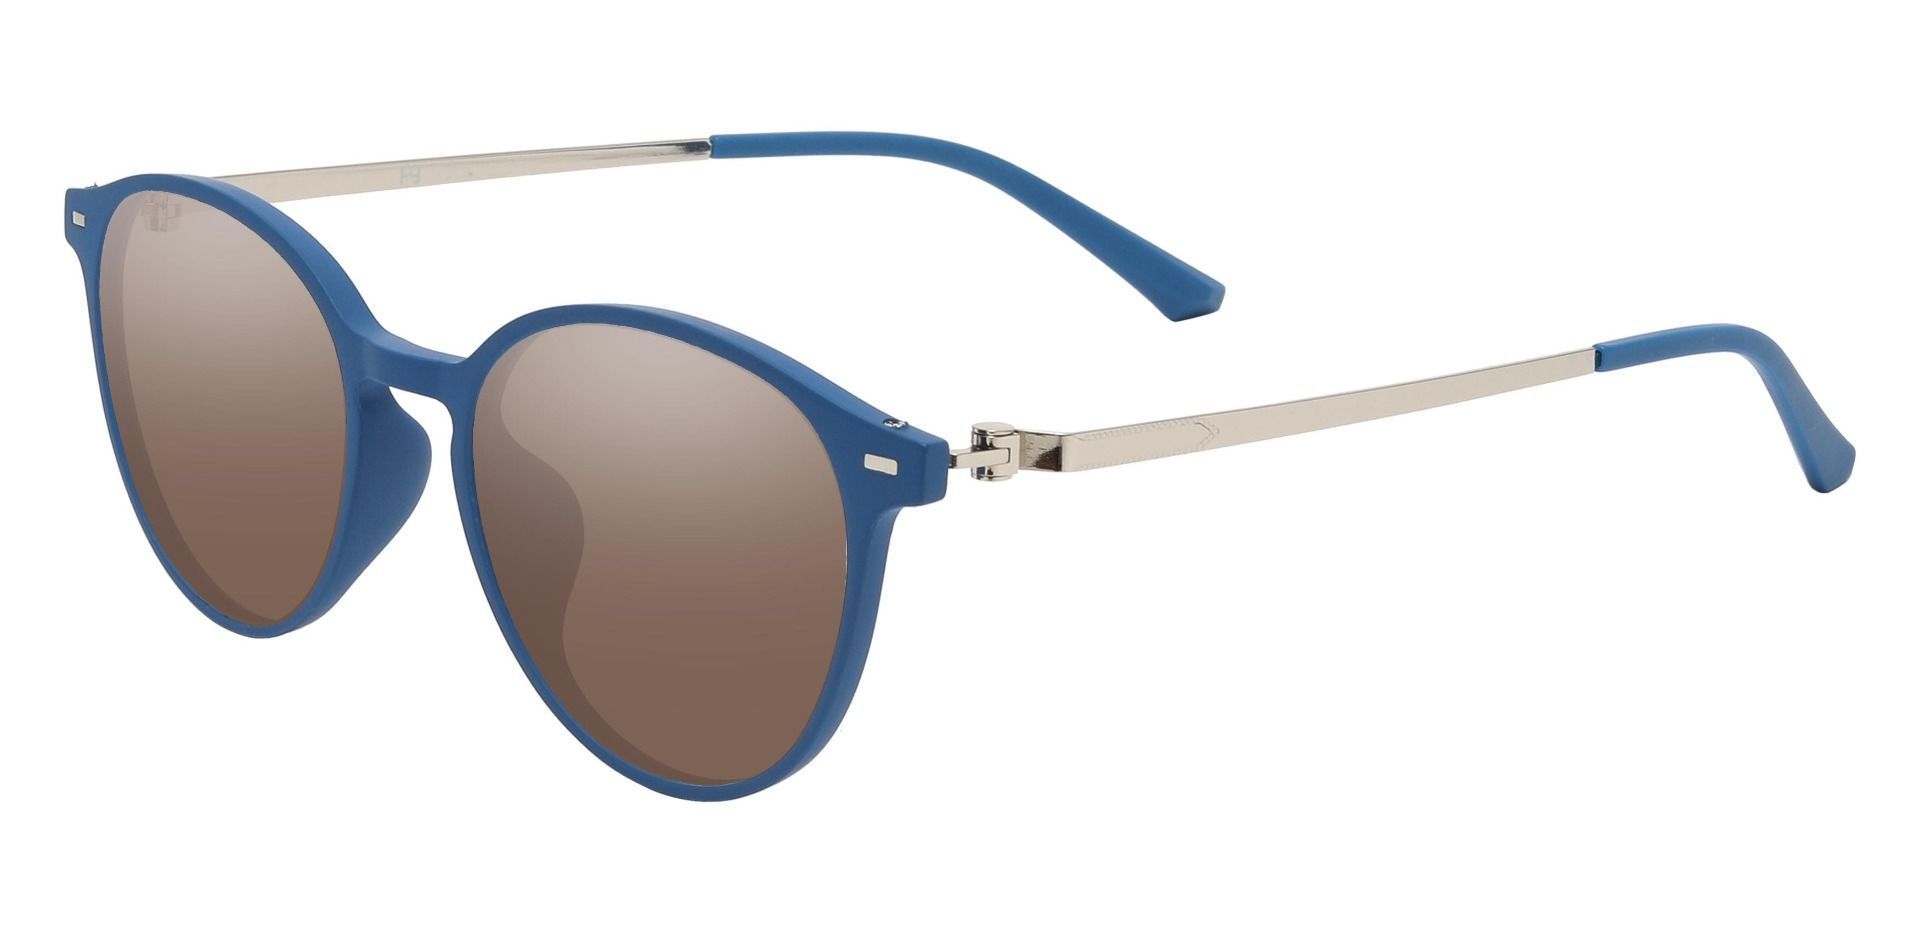 Springer Round Progressive Sunglasses - Blue Frame With Brown Lenses